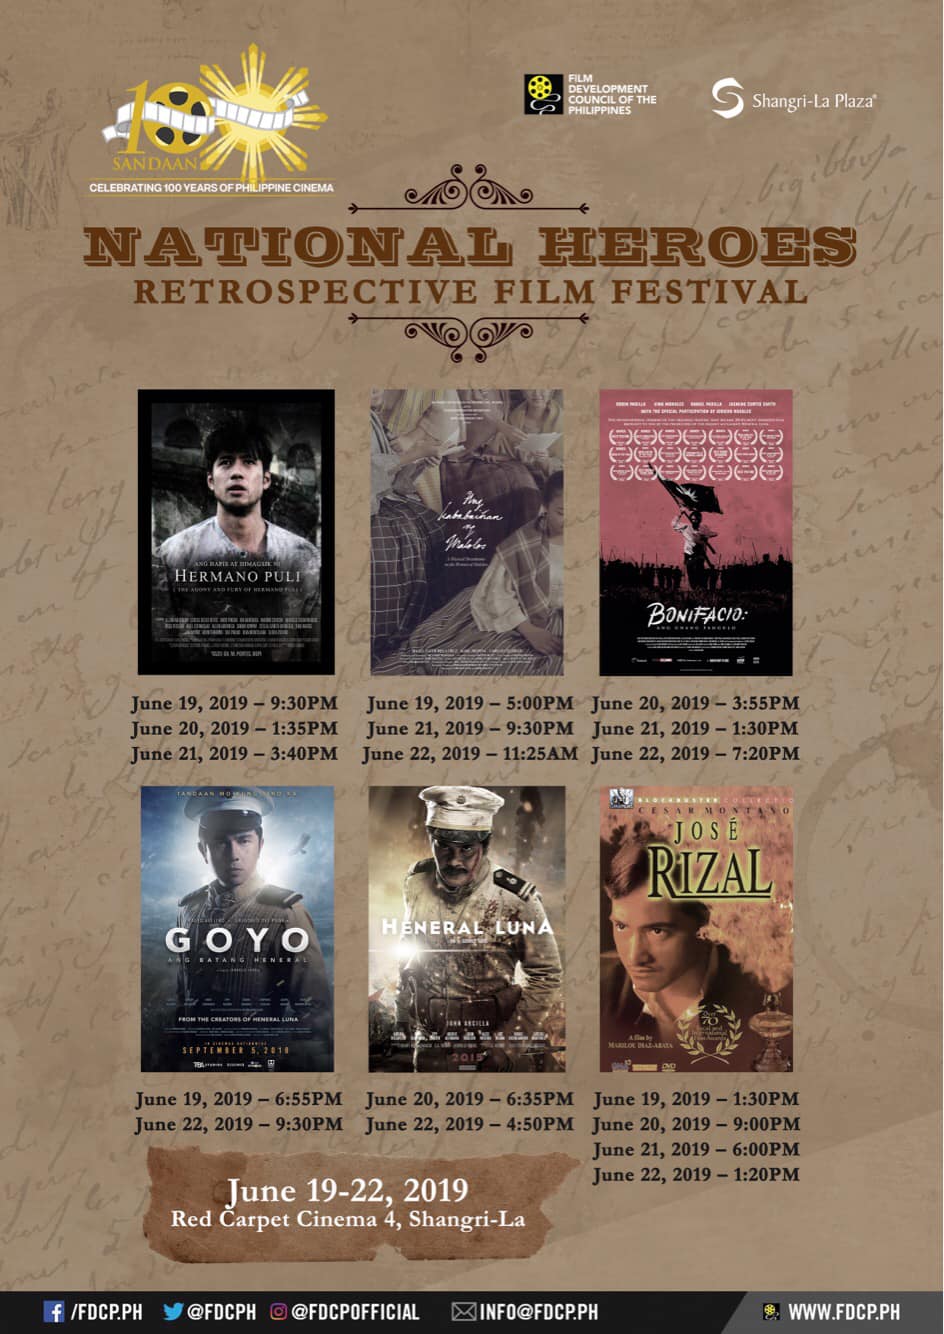 National Heroes